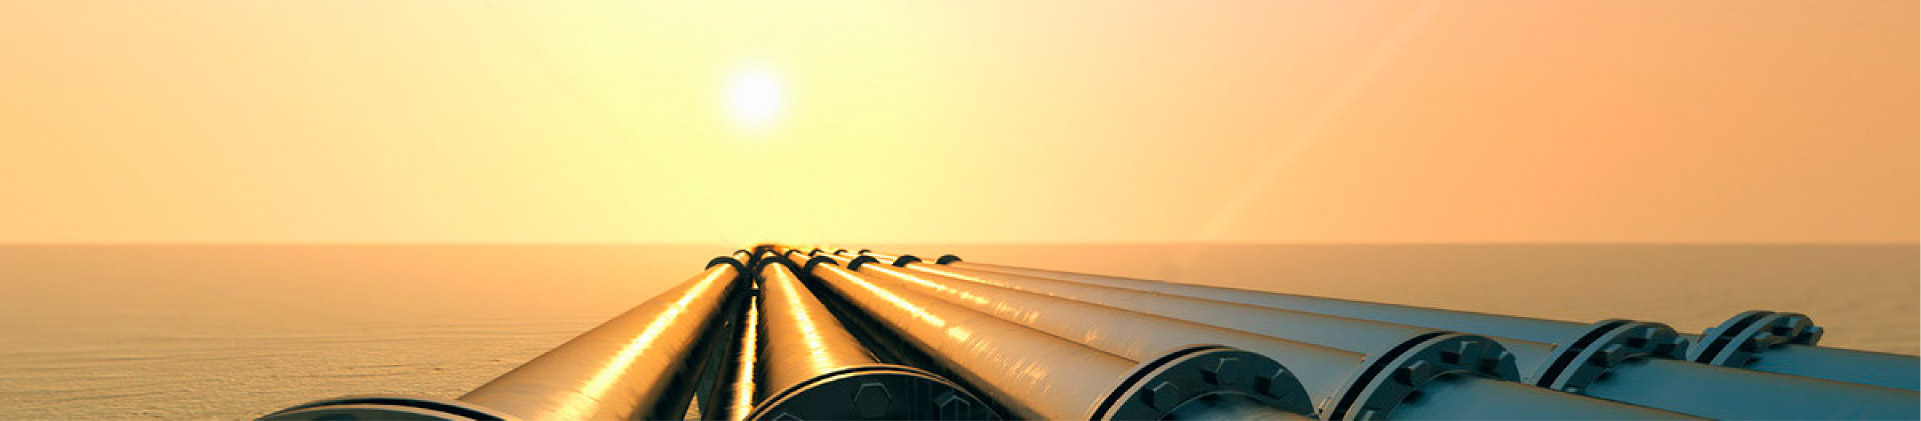 US Surge Export Oil Significa che i tagli di produzione dell'OPEC possono essere condannati